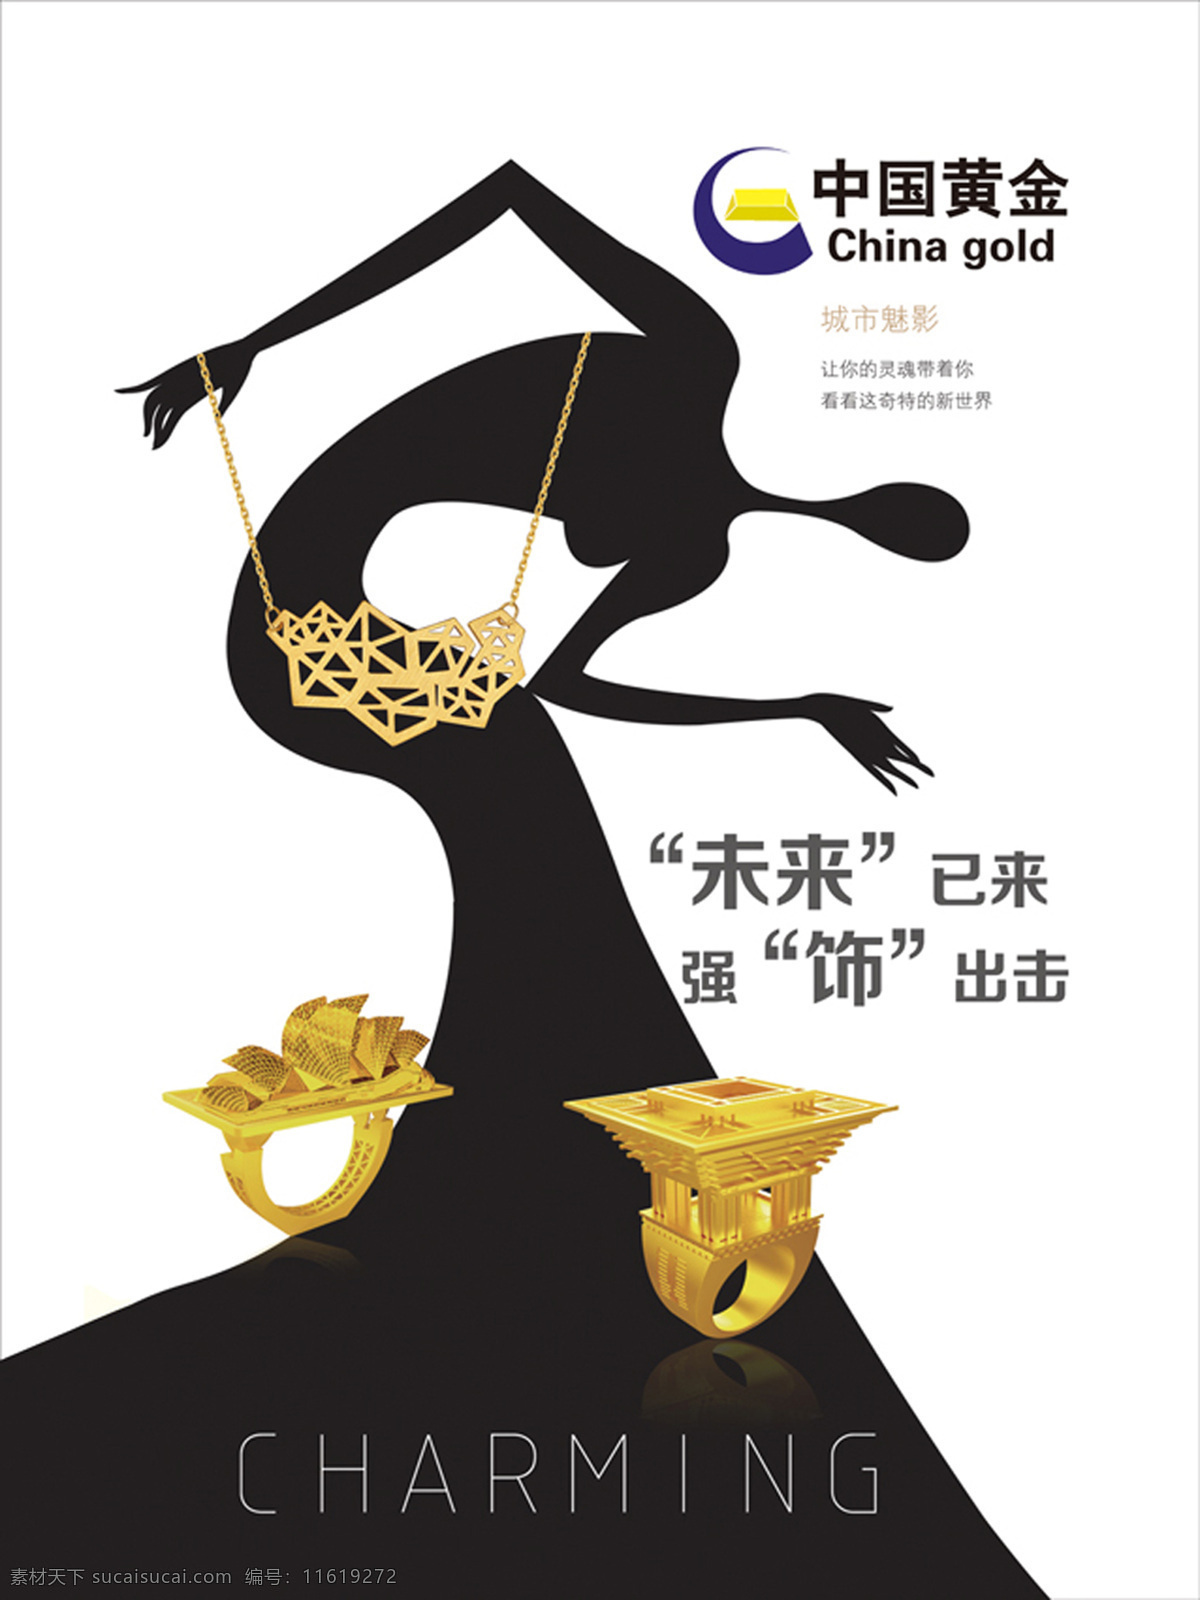 中国 黄金 装饰 图案 金戒指 中国黄金 海报 饰品 金饰品